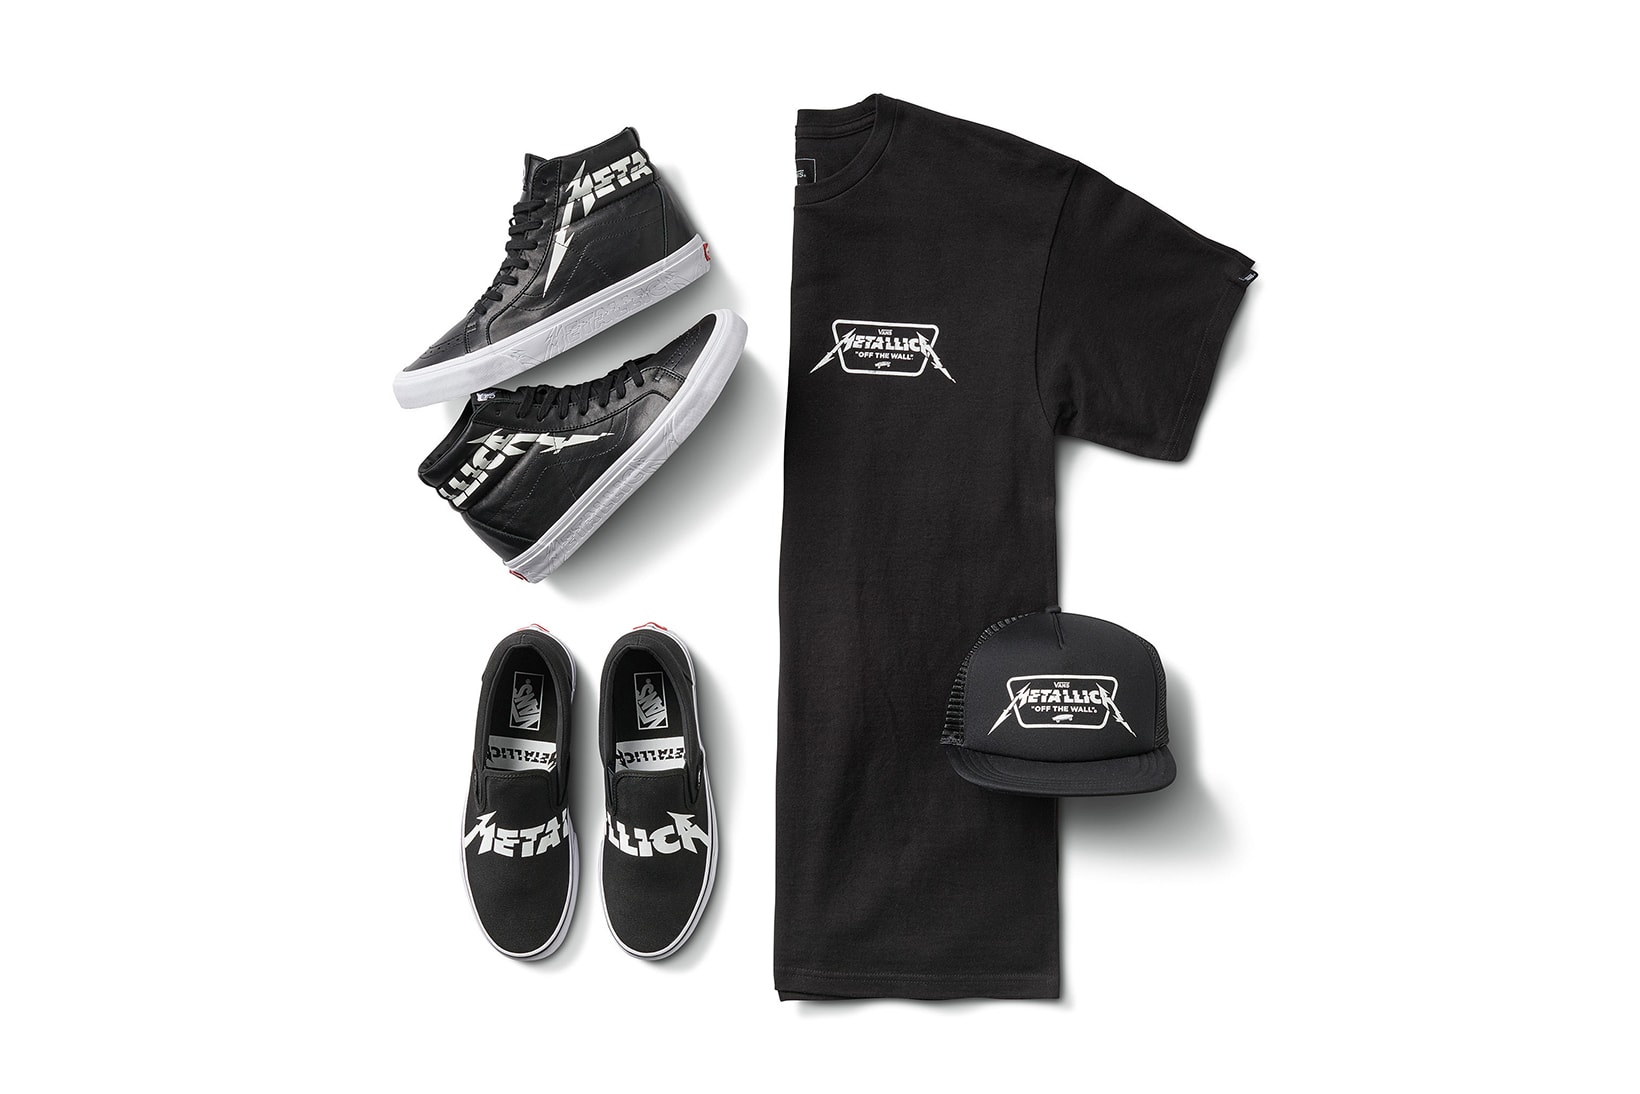 Metallica Vans 2018 Spring Summer Capsule Collaboration sk8 hi classic slip on t shirt trucker cap hat black white february 16 release date info